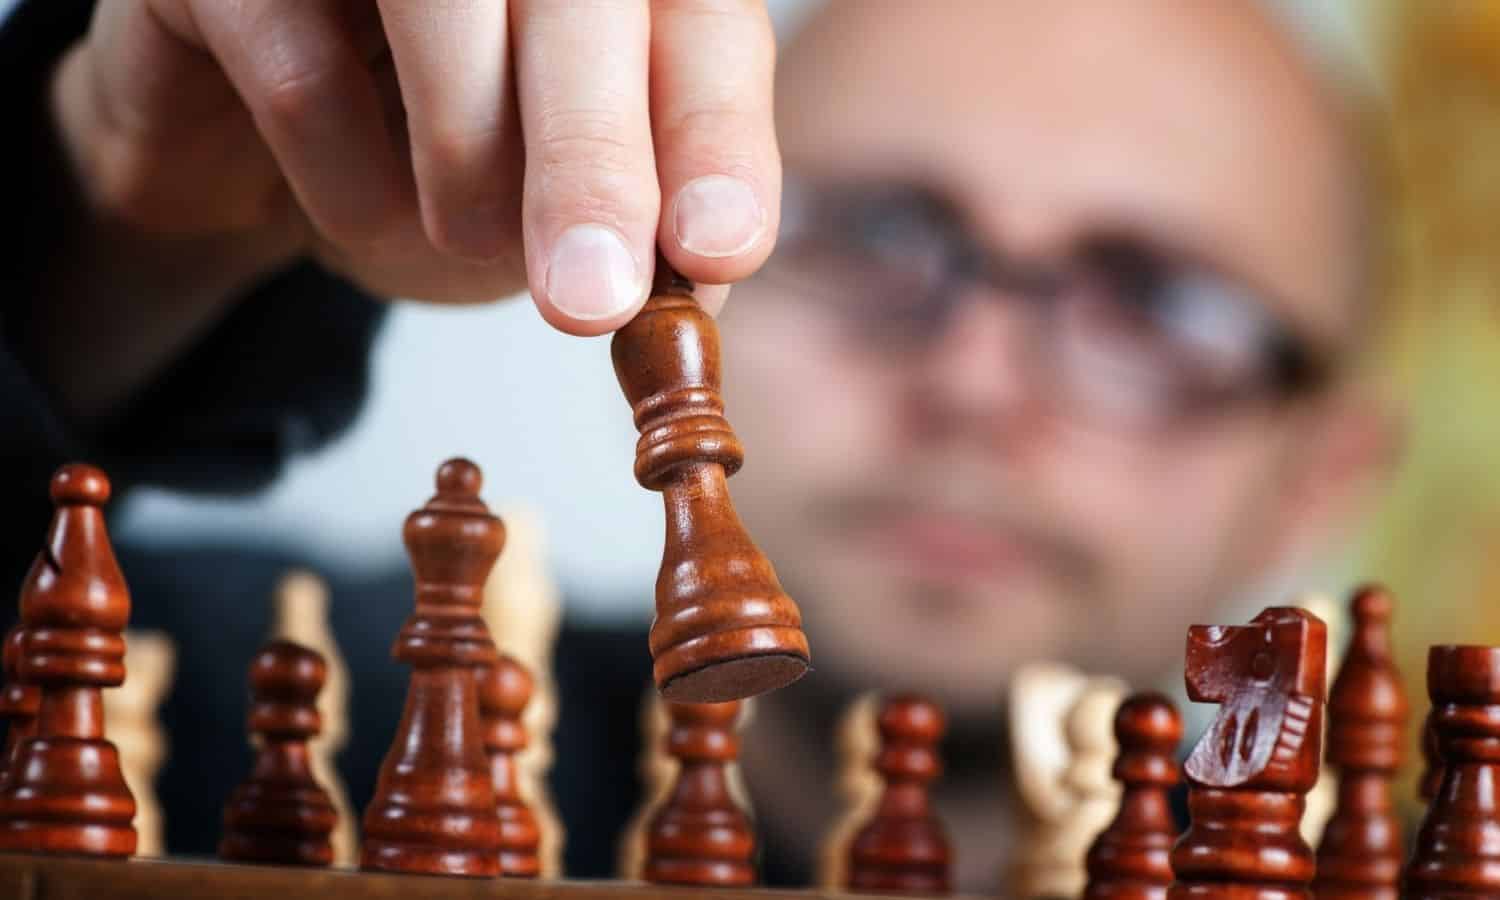 What was Bobby Fischer IQ?